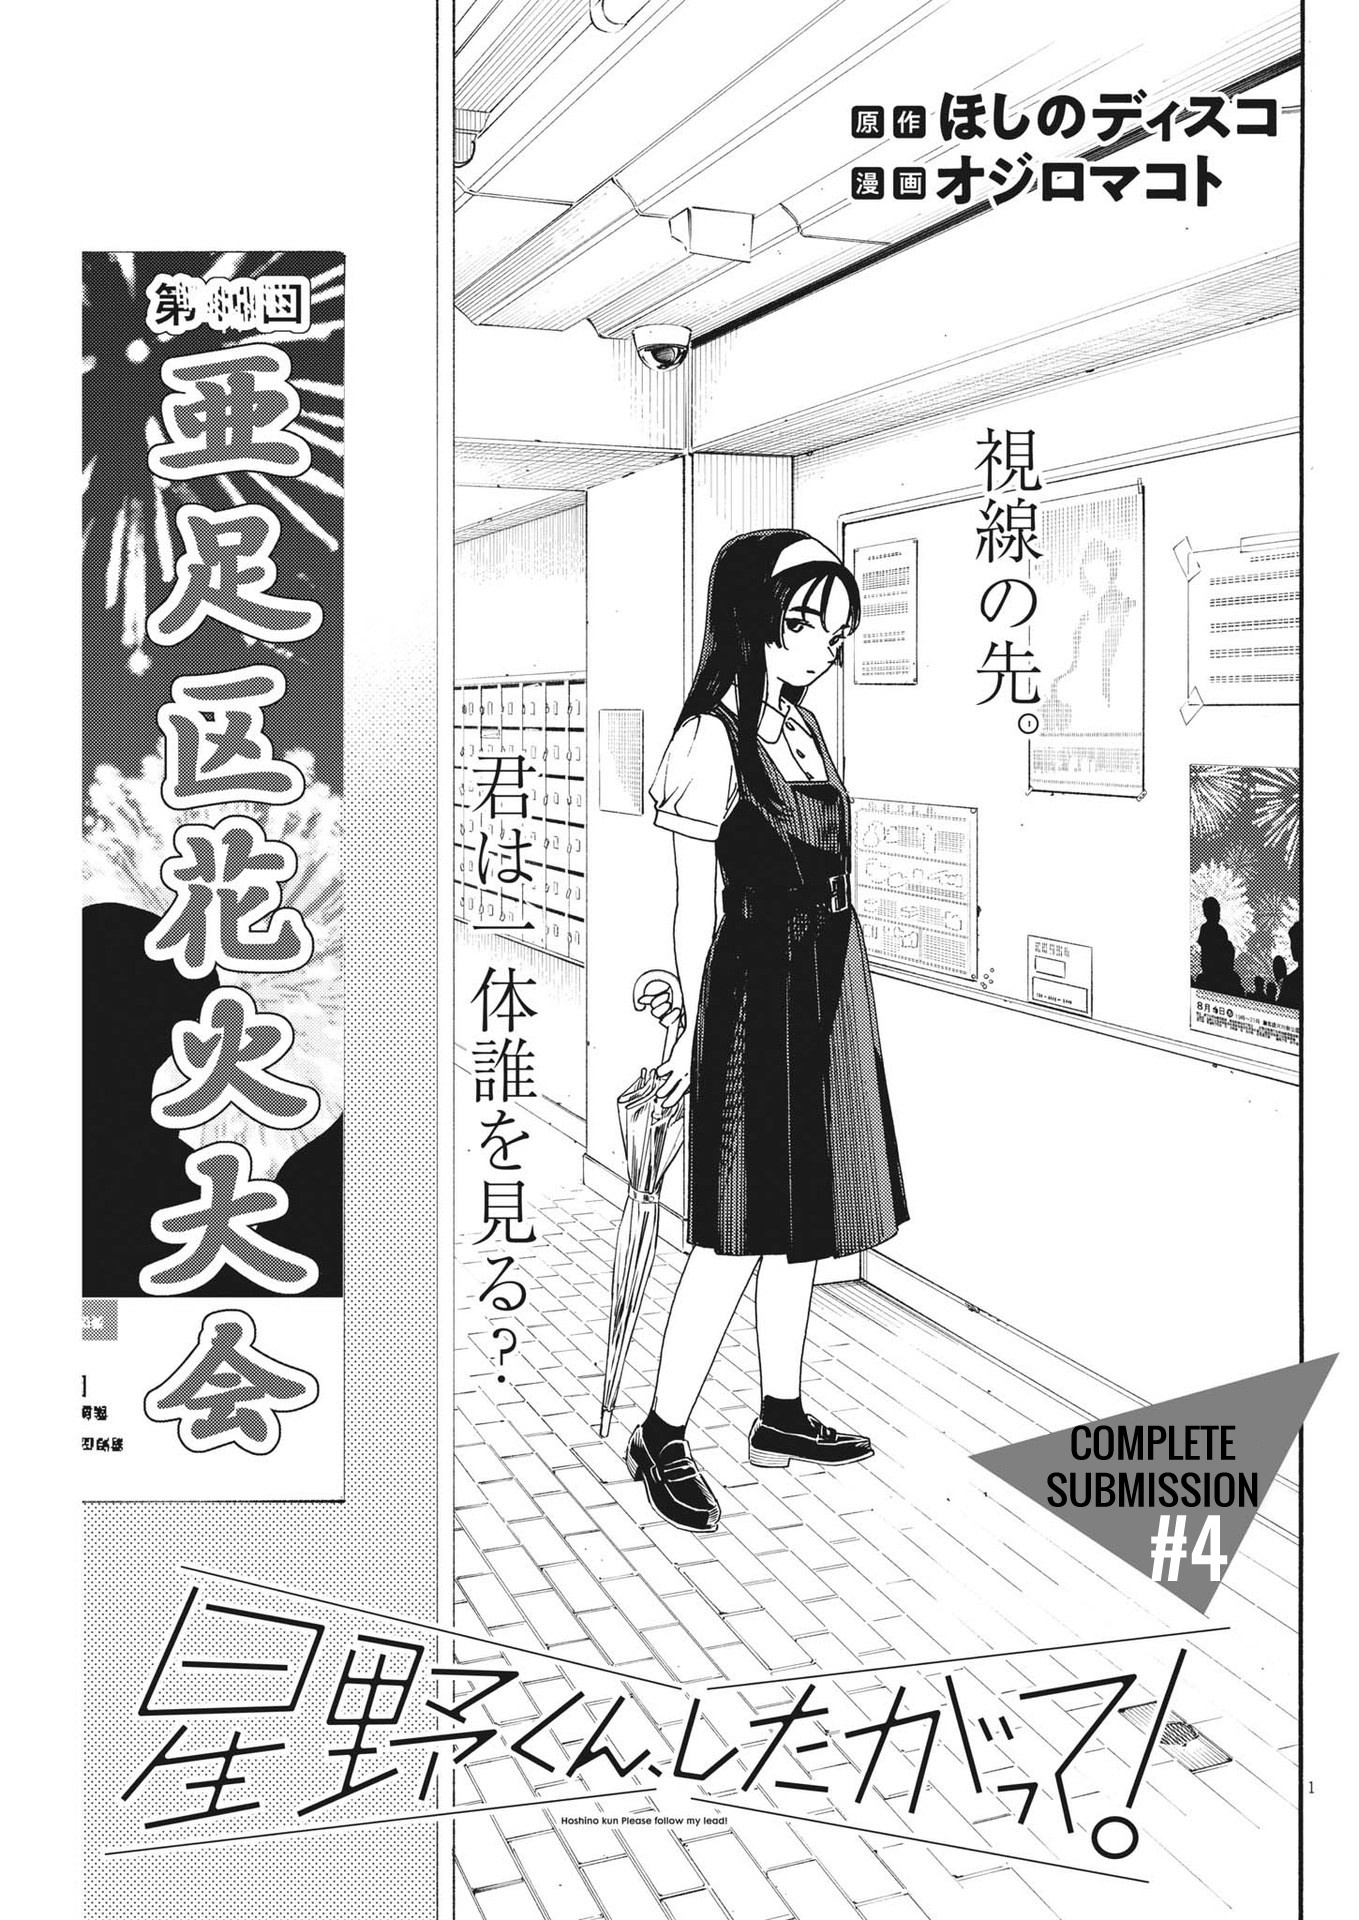 Hoshino-Kun, Shitagatte! Vol.1 Chapter 4